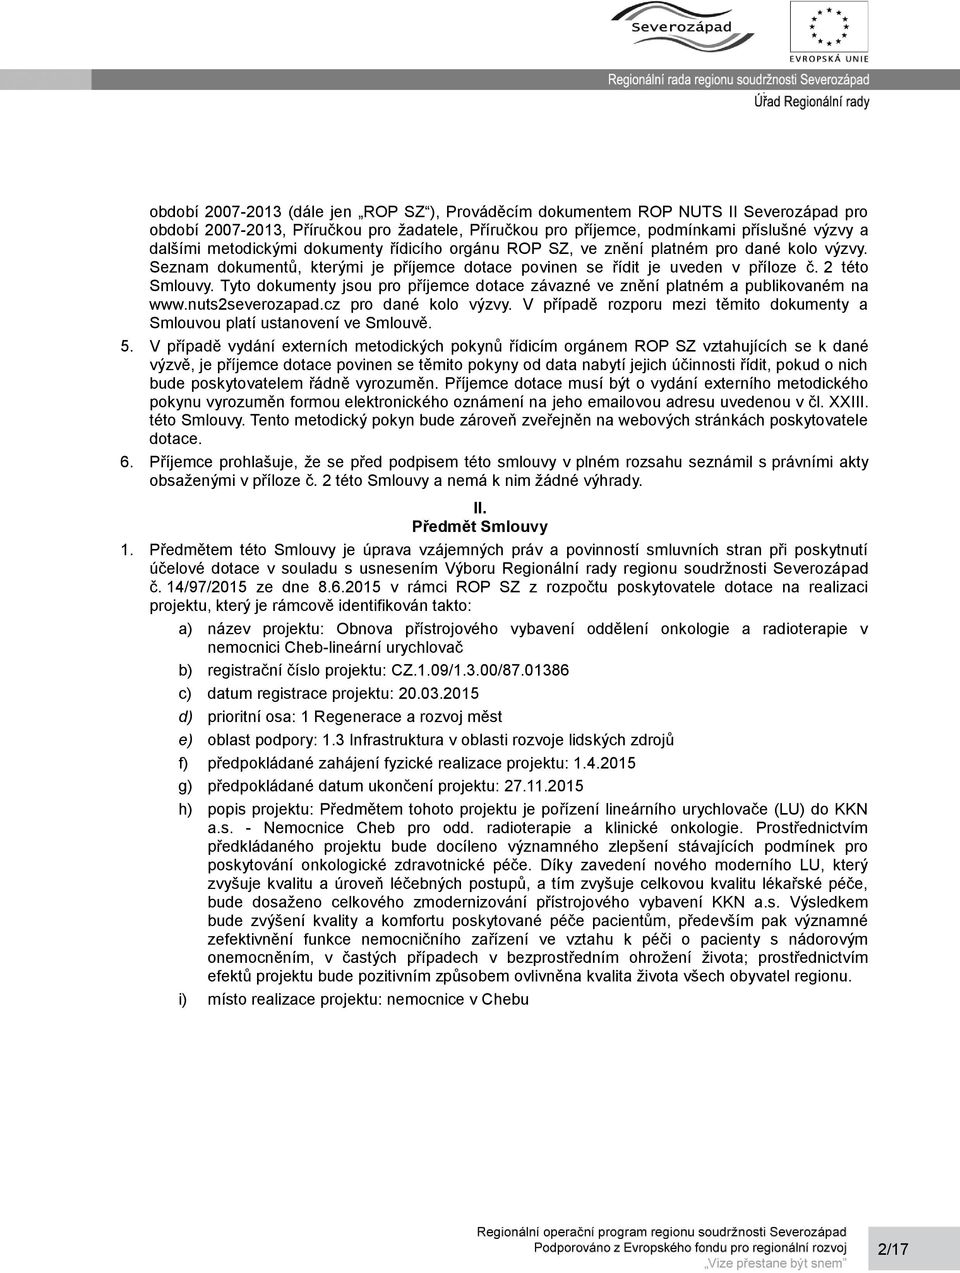 Tyto dokumenty jsou pro příjemce dotace závazné ve znění platném a publikovaném na www.nuts2severozapad.cz pro dané kolo výzvy.